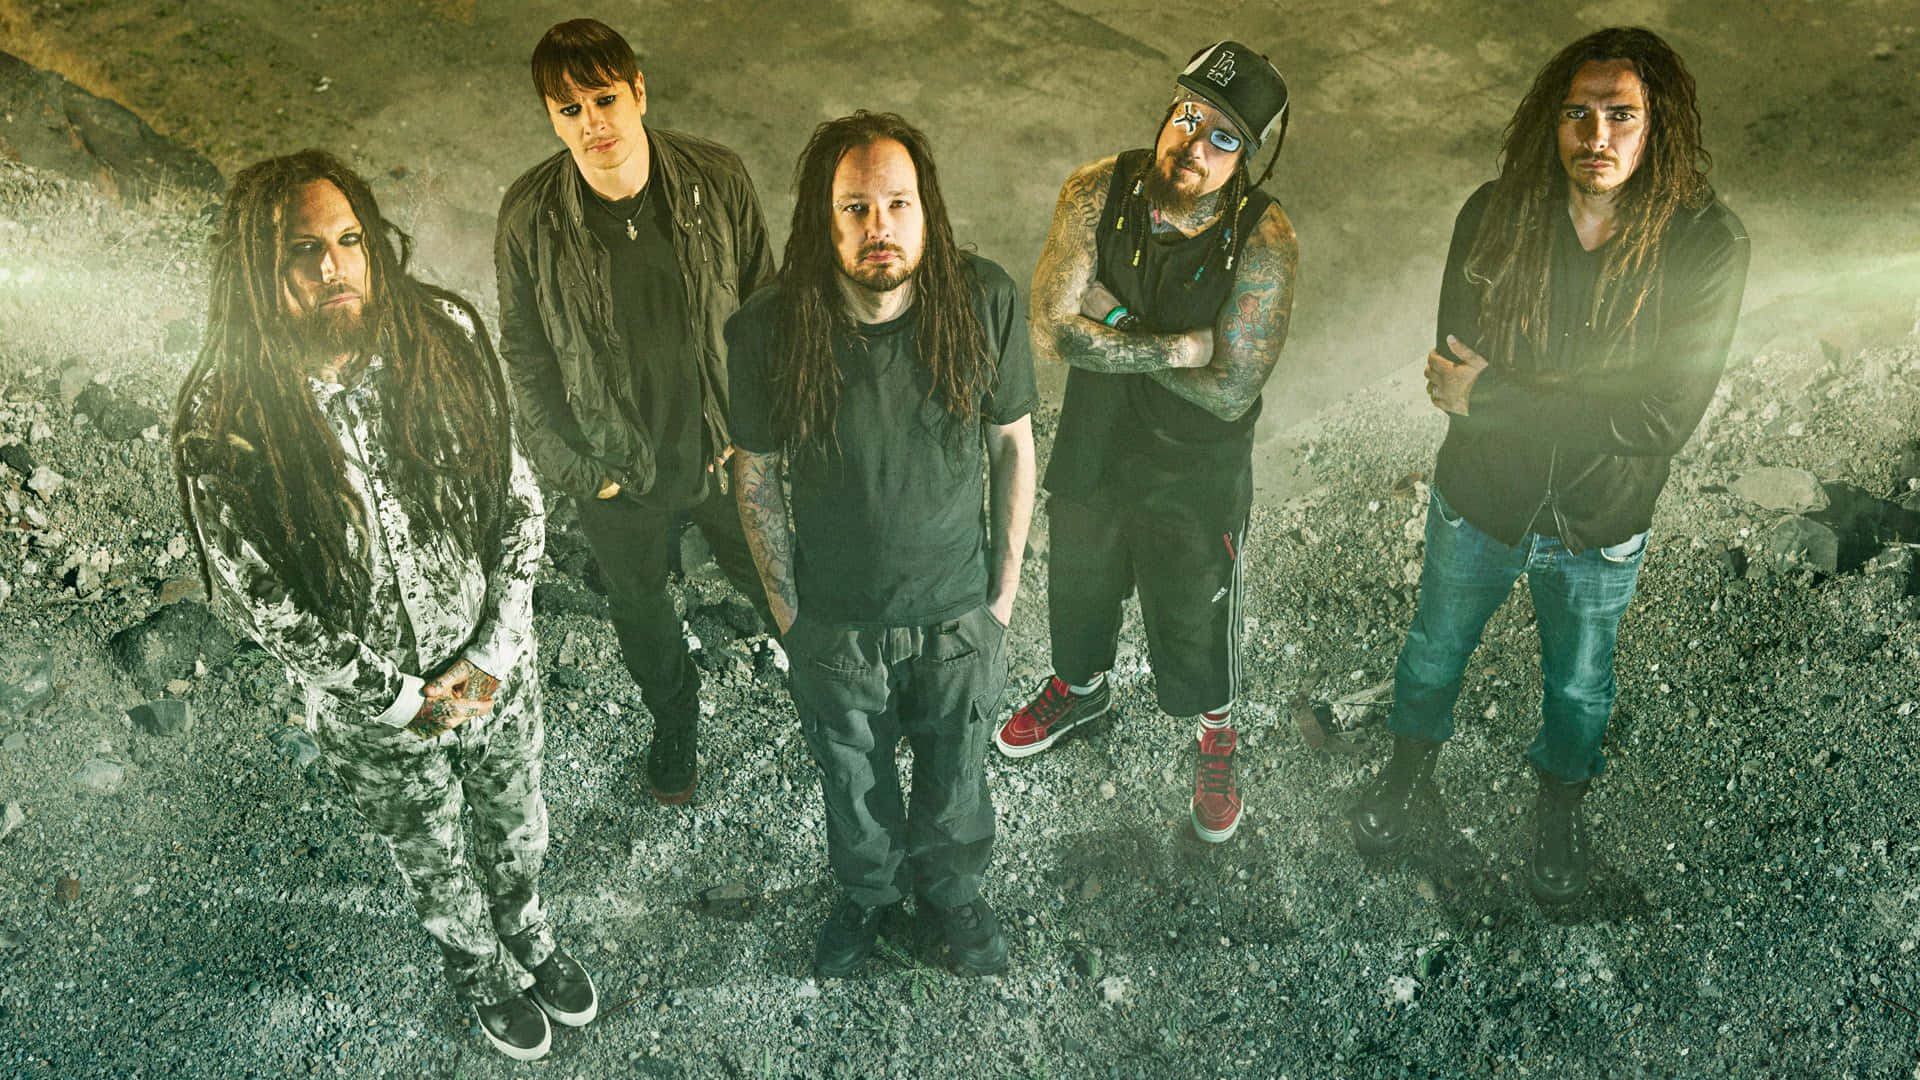 Amerikanskanu-metal Bandet Korn Poserar I Hetluften. Wallpaper